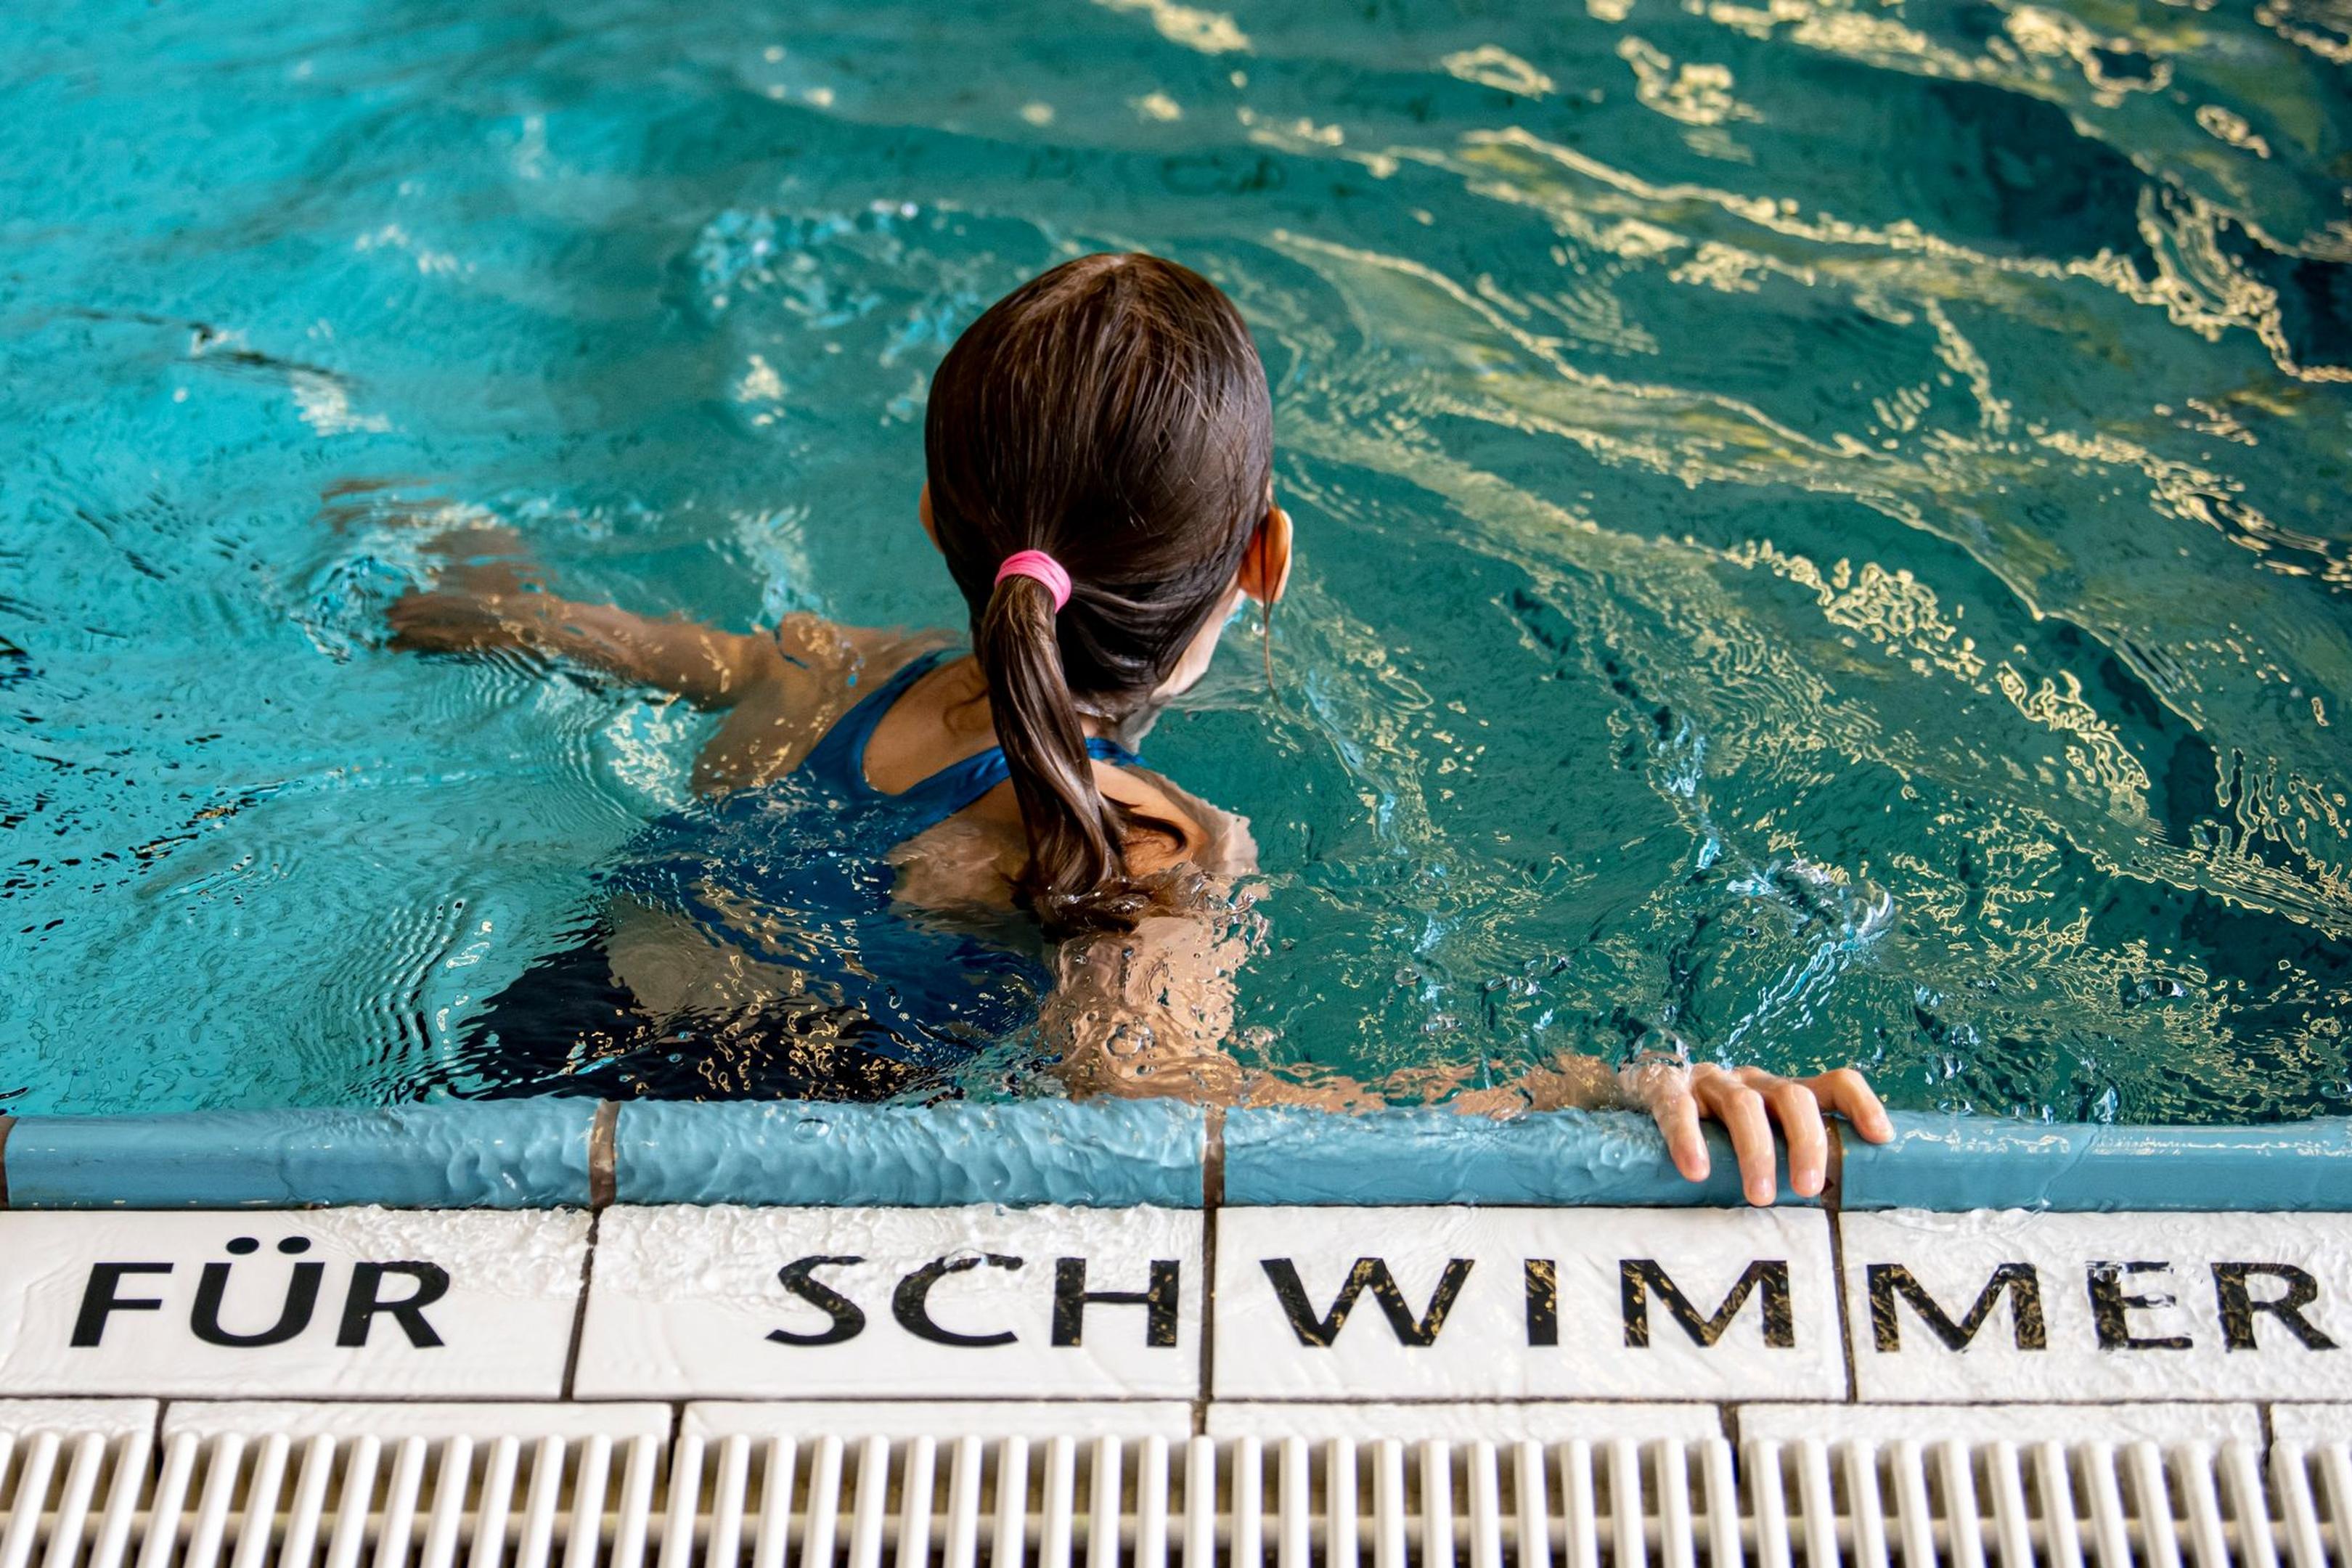 Ein Kind schwimmt in einem Schwimmbad.